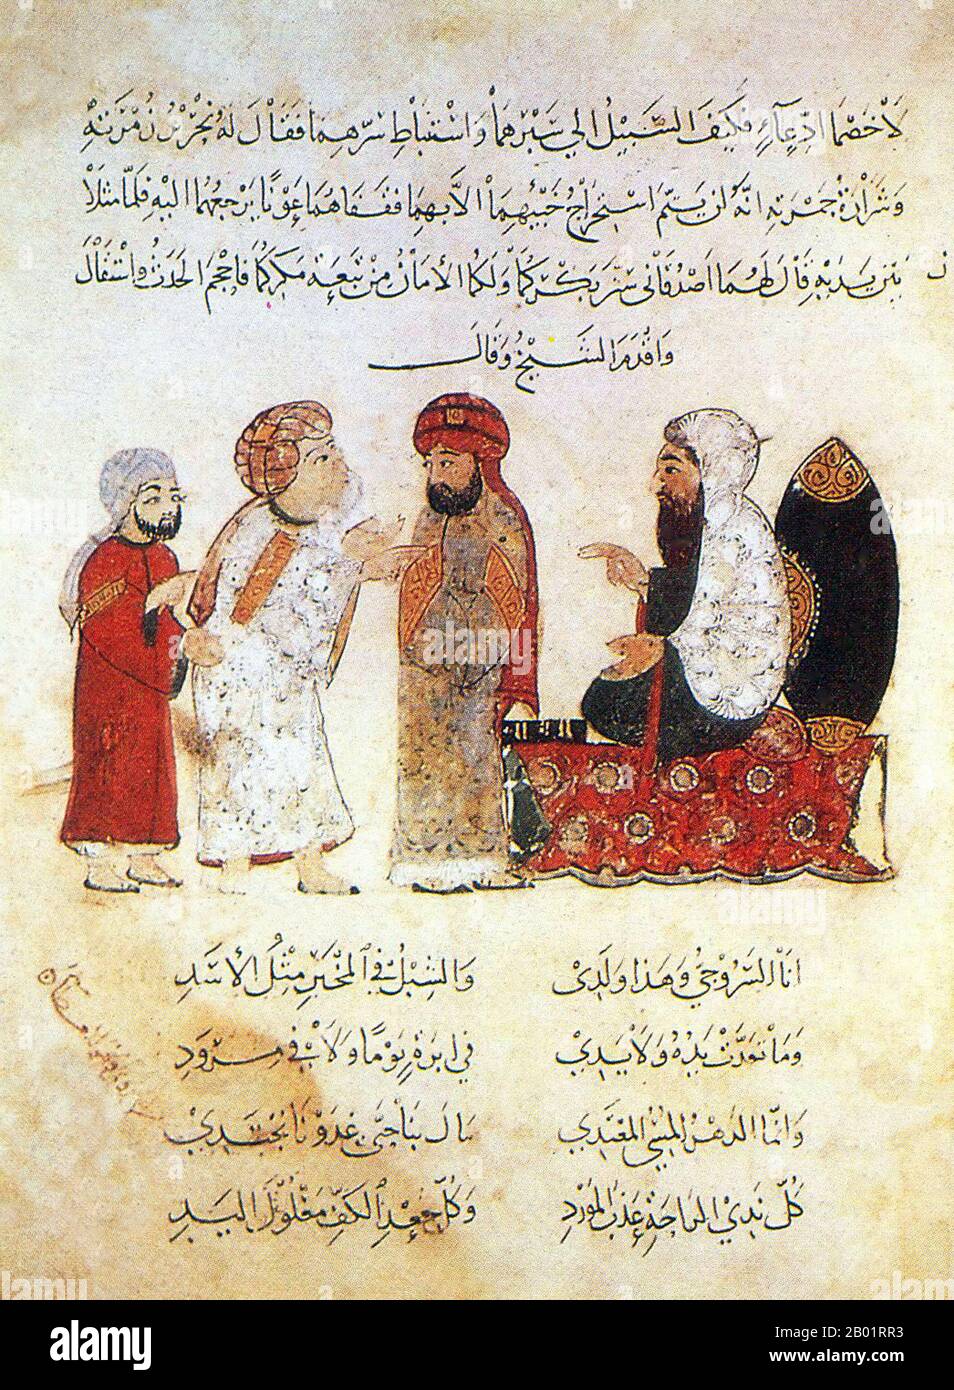 Iraq: Un sovrano in trono, il suo consigliere e due supplicanti. Pittura in miniatura di Yahya ibn Mahmud al-Wasiti, 1237 d.C. Yahyâ ibn Mahmûd al-Wâsitî è stato un artista arabo islamico del XIII secolo. Al-Wasiti è nato a Wasit, nel sud dell'Iraq. Era noto per le sue illustrazioni del Maqam di al-Hariri. I Maqāma (letteralmente "assemblee") sono un genere letterario arabo (originariamente) di prosa rimata con intervalli di poesia in cui la stravaganza retorica è evidente. Si dice che l'autore del X secolo Badī' al-Zaman al-Hamadhāni abbia inventato la forma, che fu estesa da al-Hariri di Bassora. Foto Stock